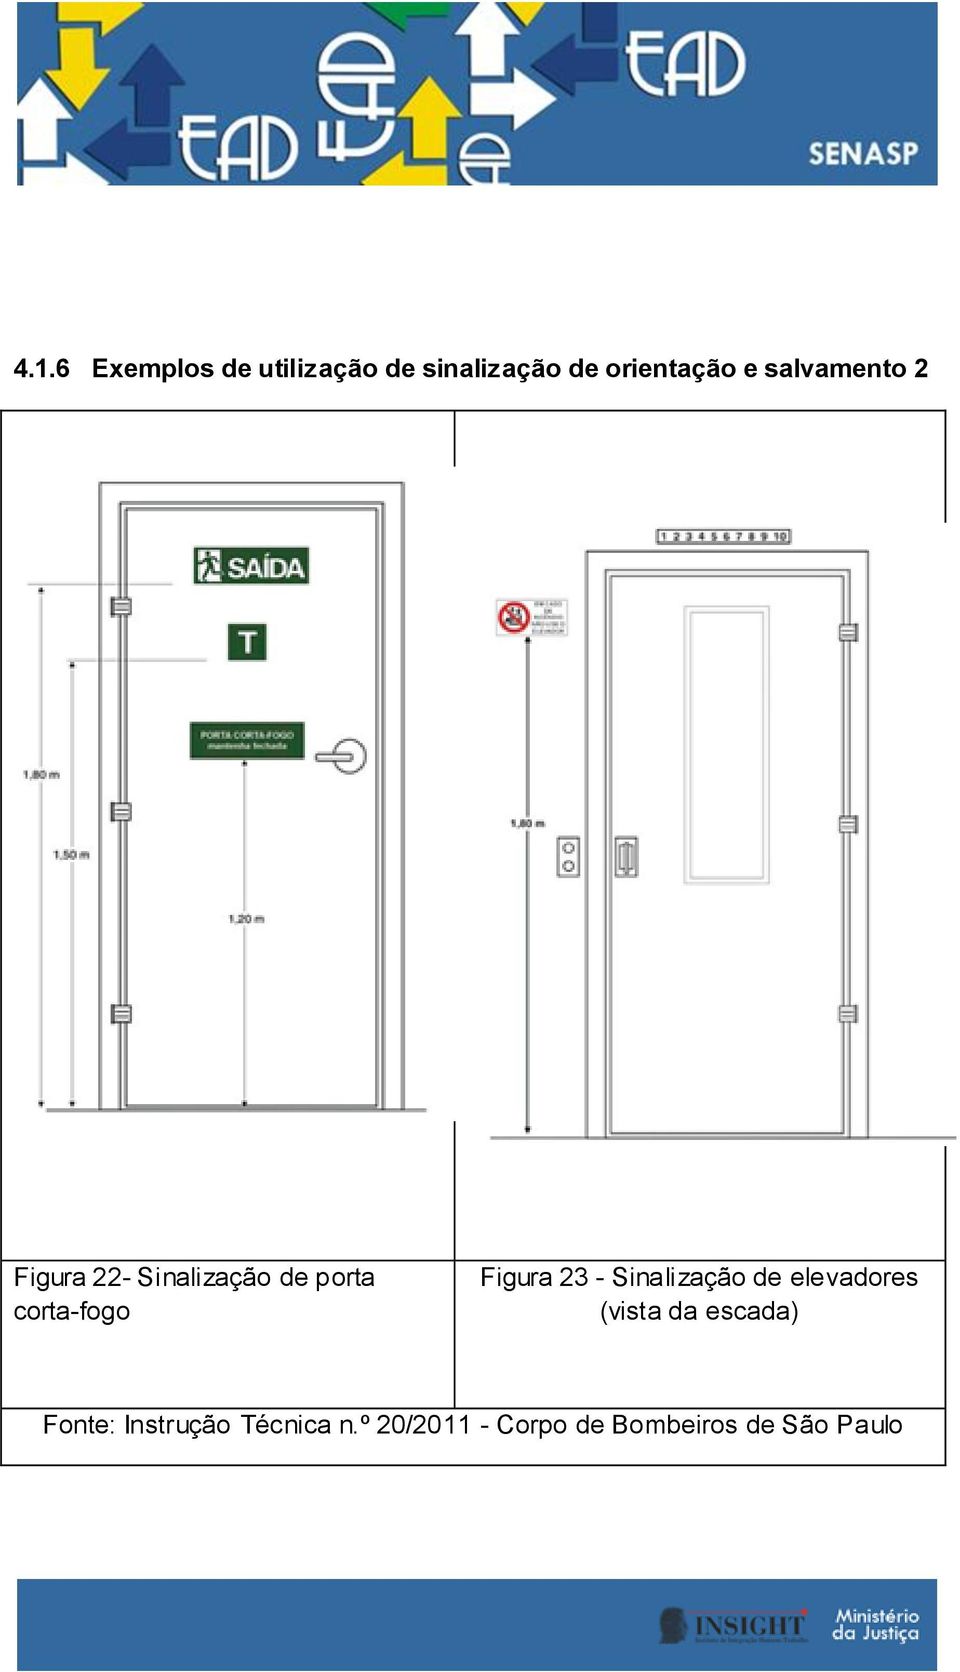 Figura 23 - Sinalização de elevadores (vista da escada)